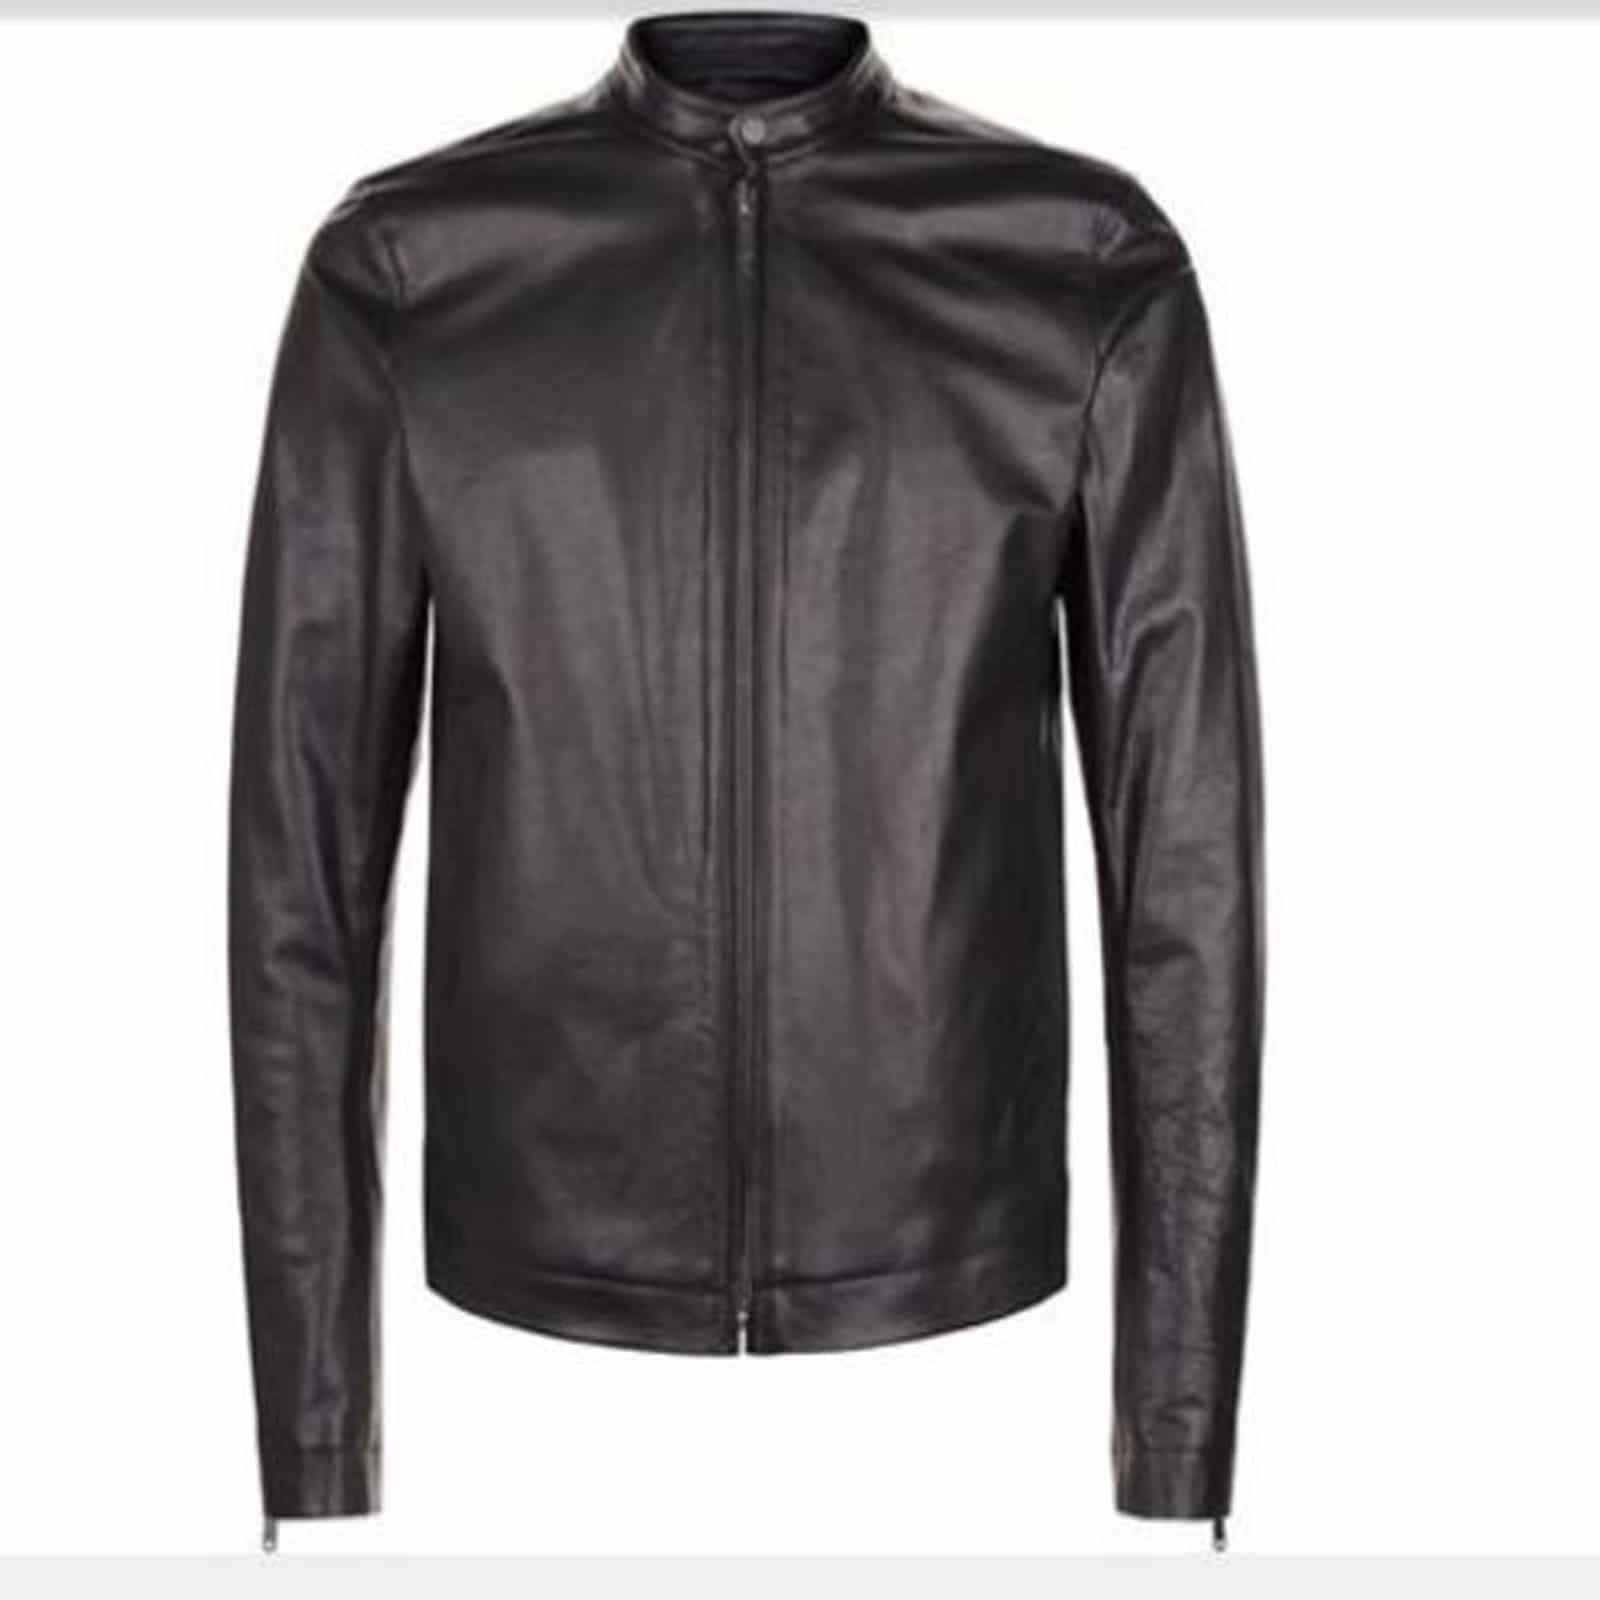 Simple Biker Leather Jacket | Men's Biker Leather Jackets - Kilt and Jacks